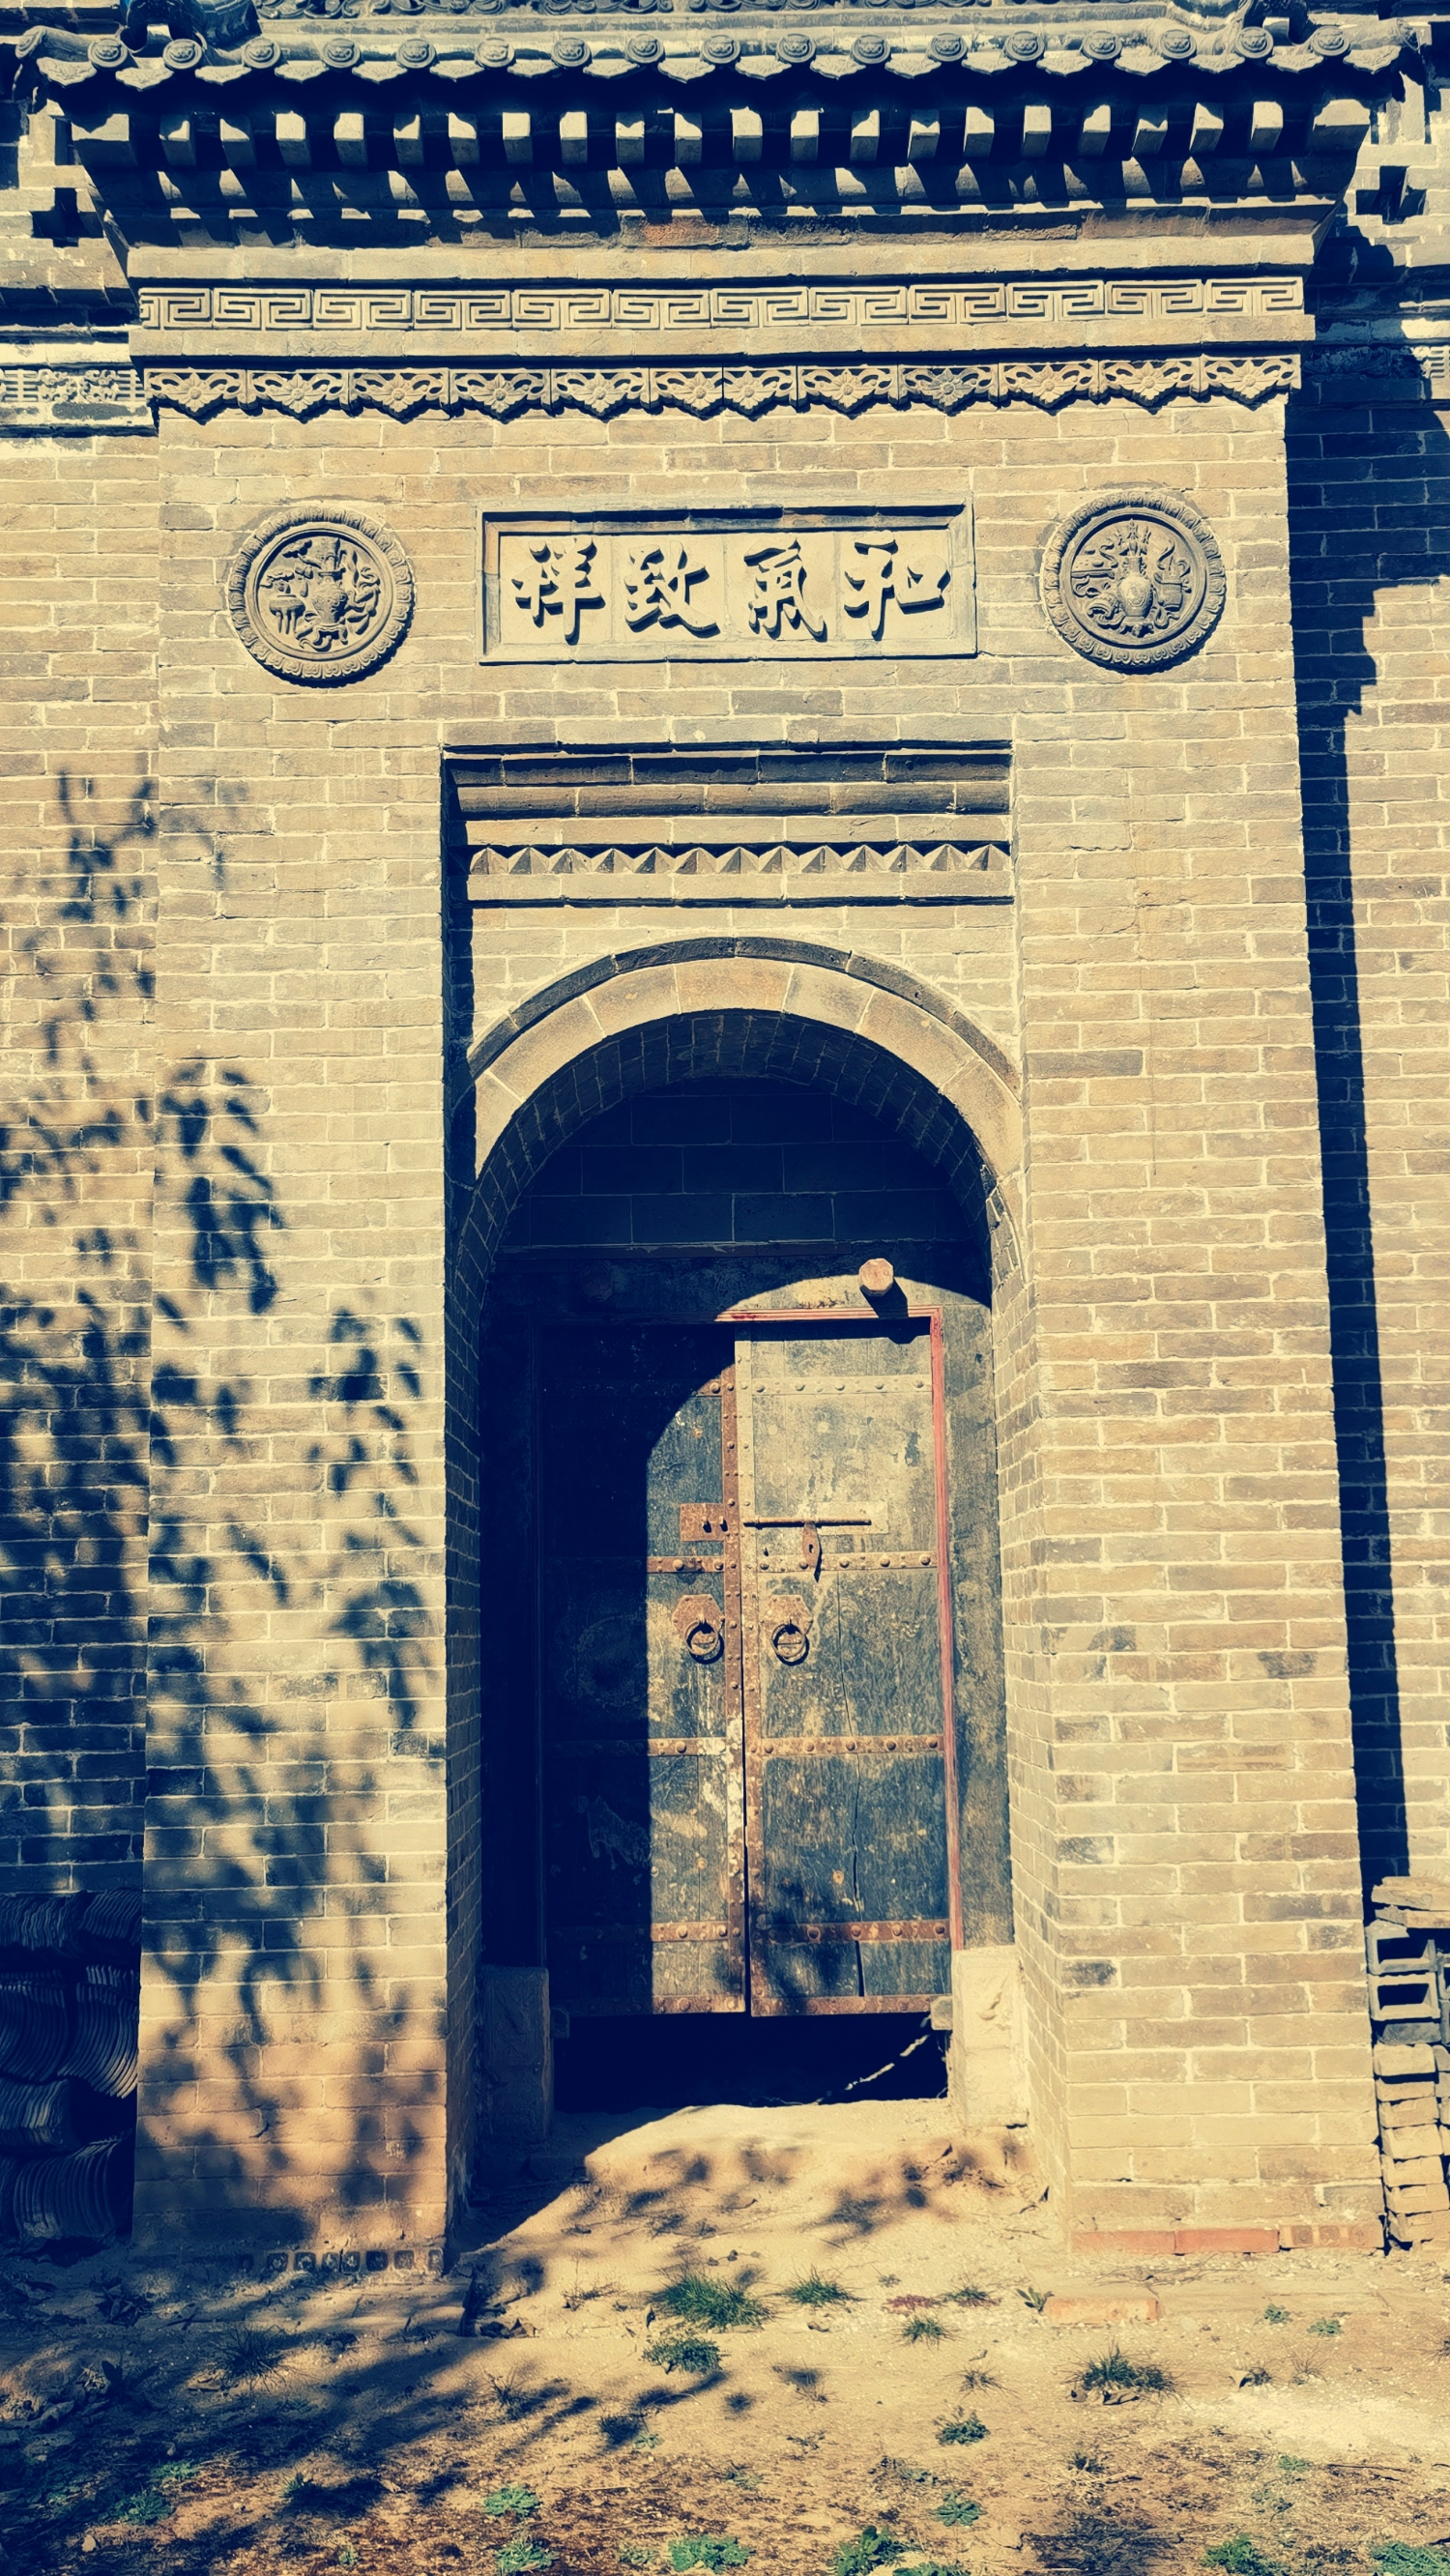 澄城县保存完好的古代书院丨壶阳书院